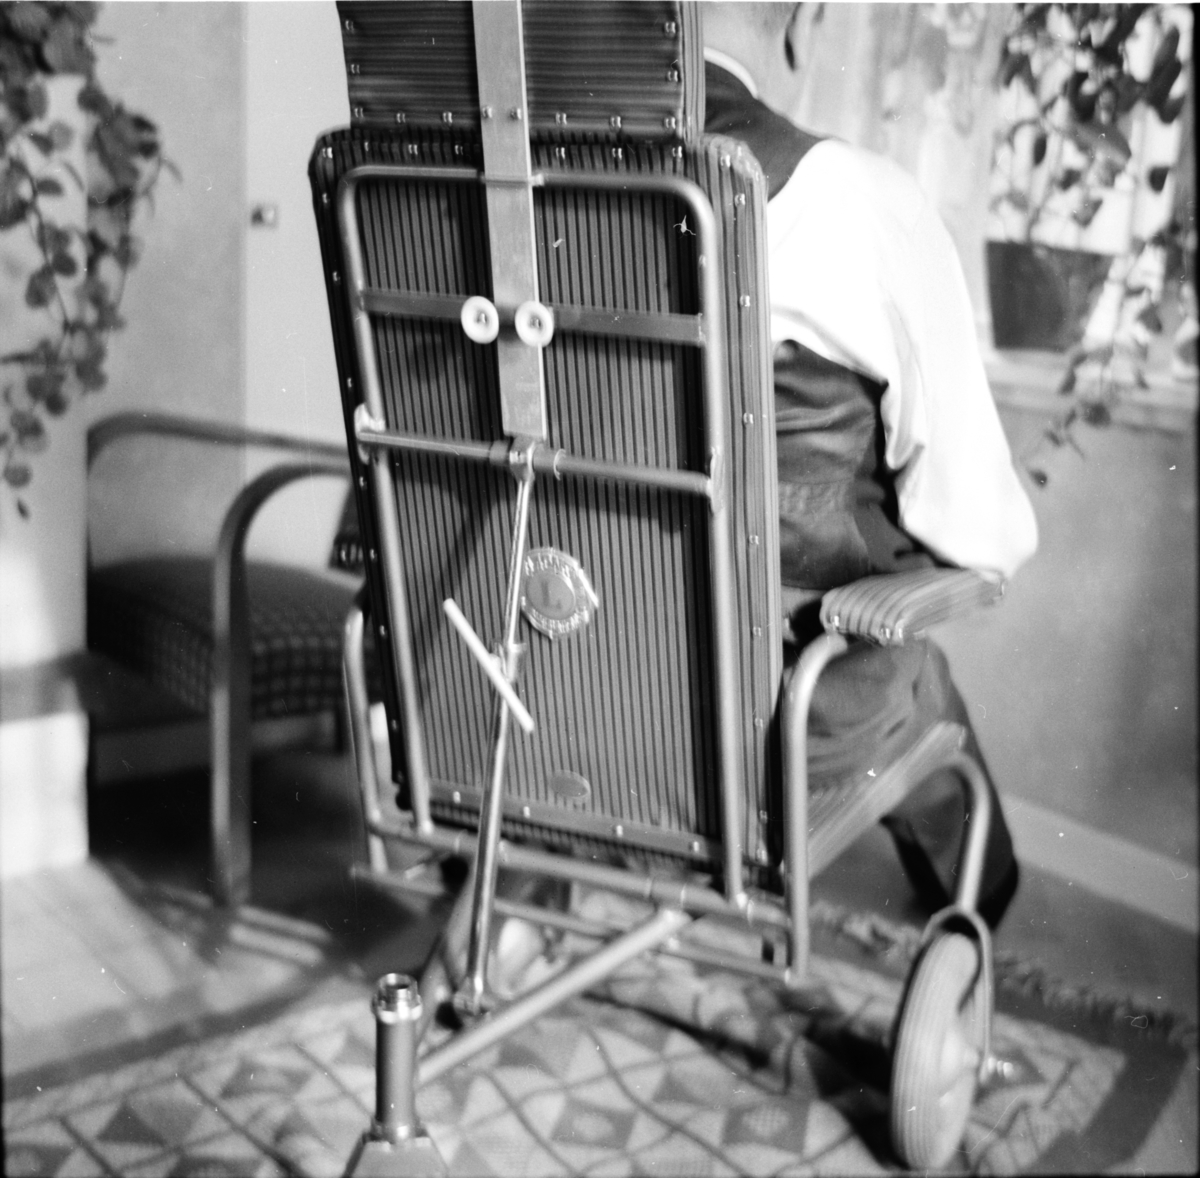 Lions-klubbens Agge Järmens överlämnar en rullstol till
Bertil Hedhed Görtsbo
Oktober 1955